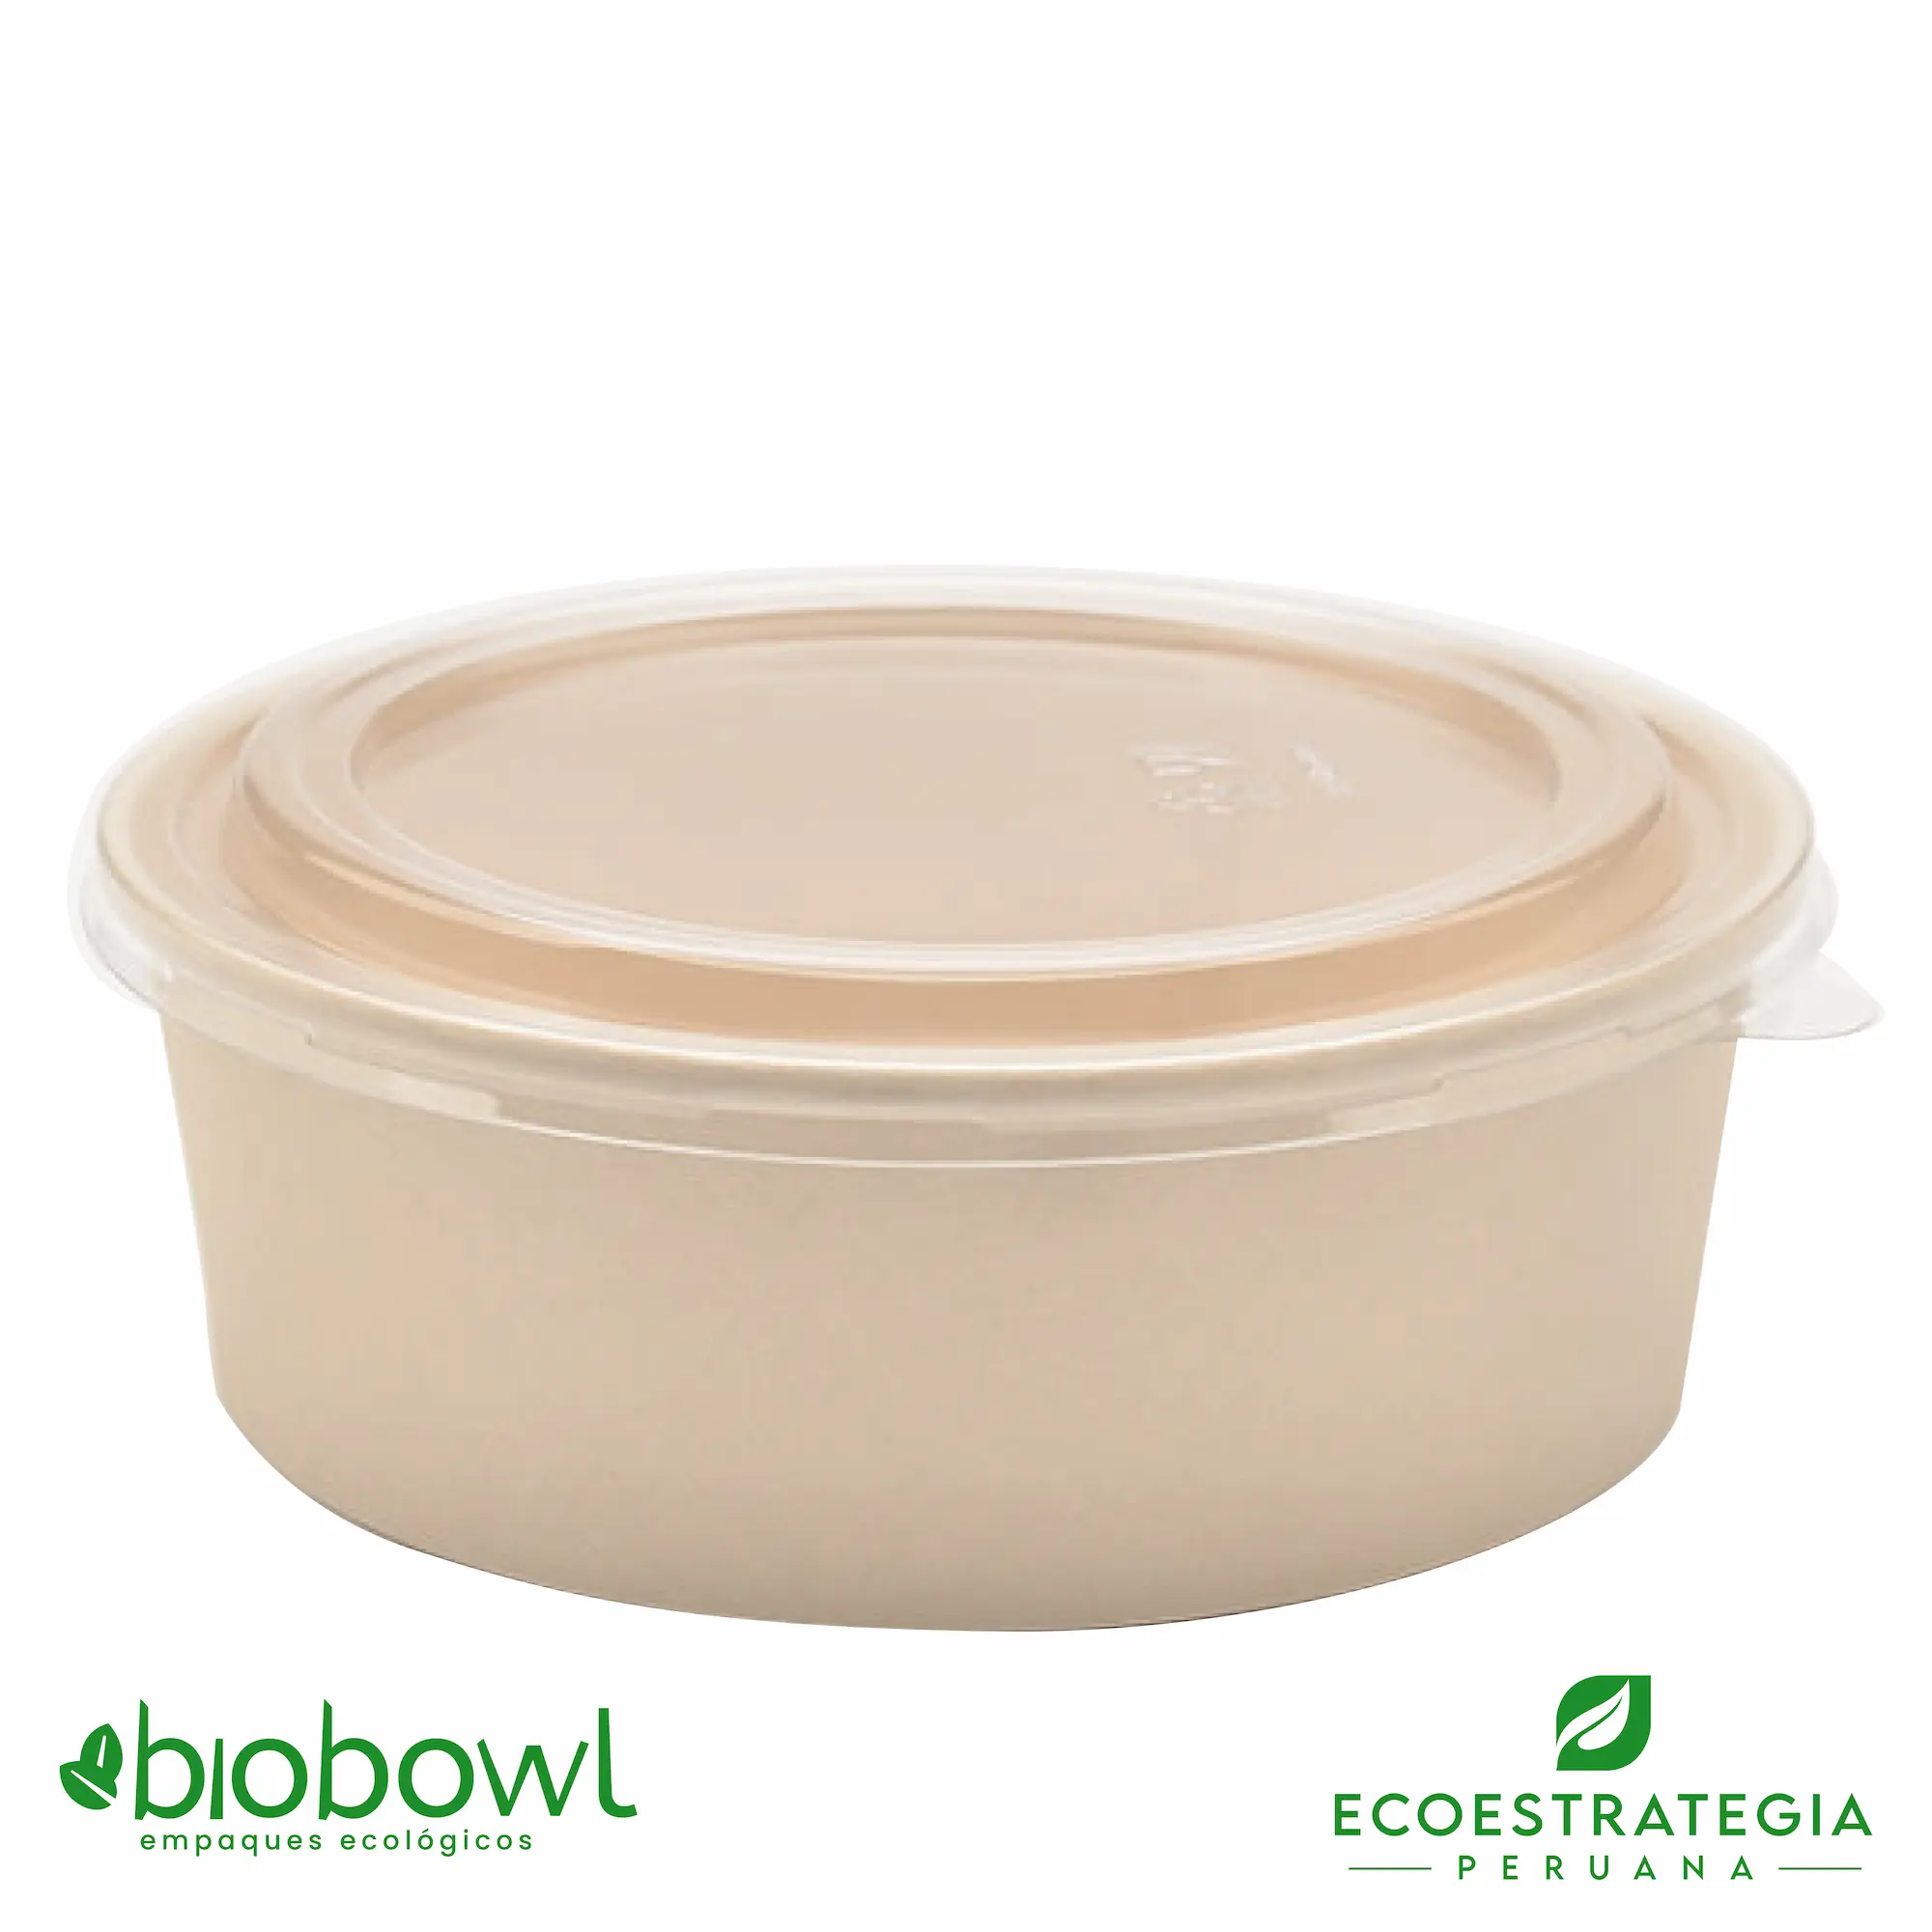 Este envase biodegradable es un bowl 1300ml hecho de bambú. Envases descartables con gramaje ideal, cotiza tus vasos para helados, táper para sopa, bowls salad